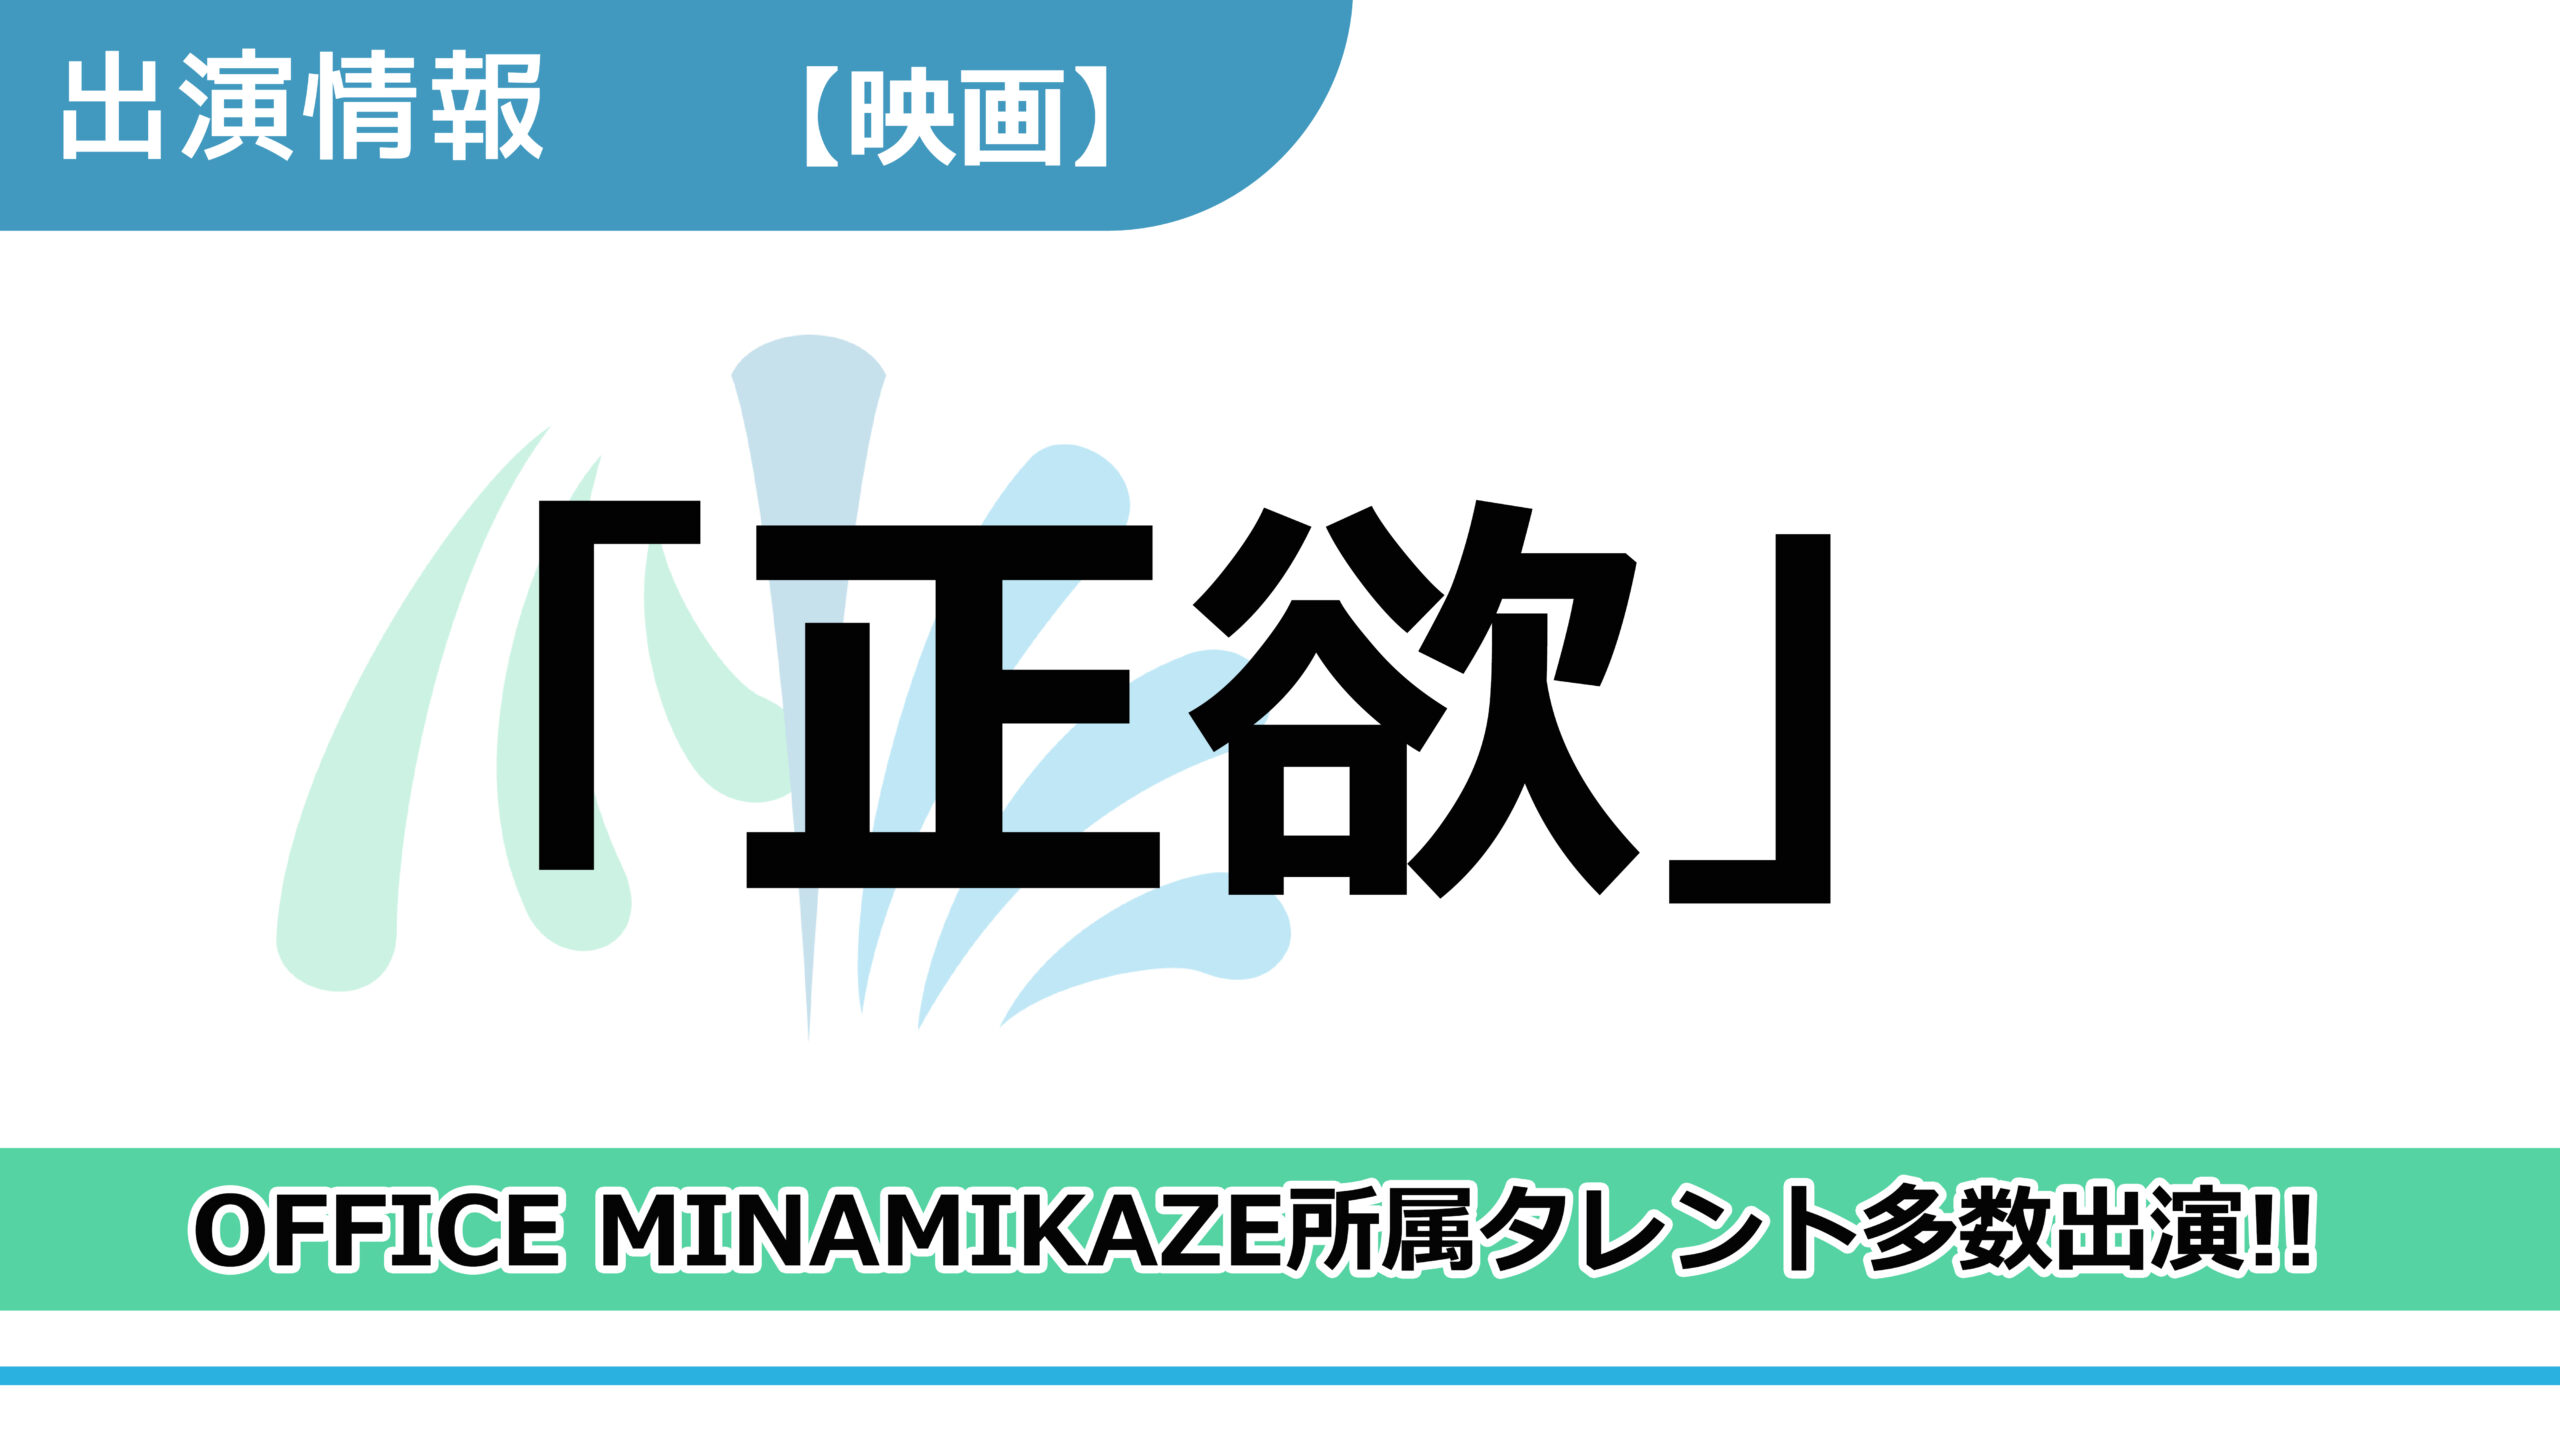 【出演情報】OFFICE MINAMIKAZE所属タレント多数出演 / 映画「正欲」